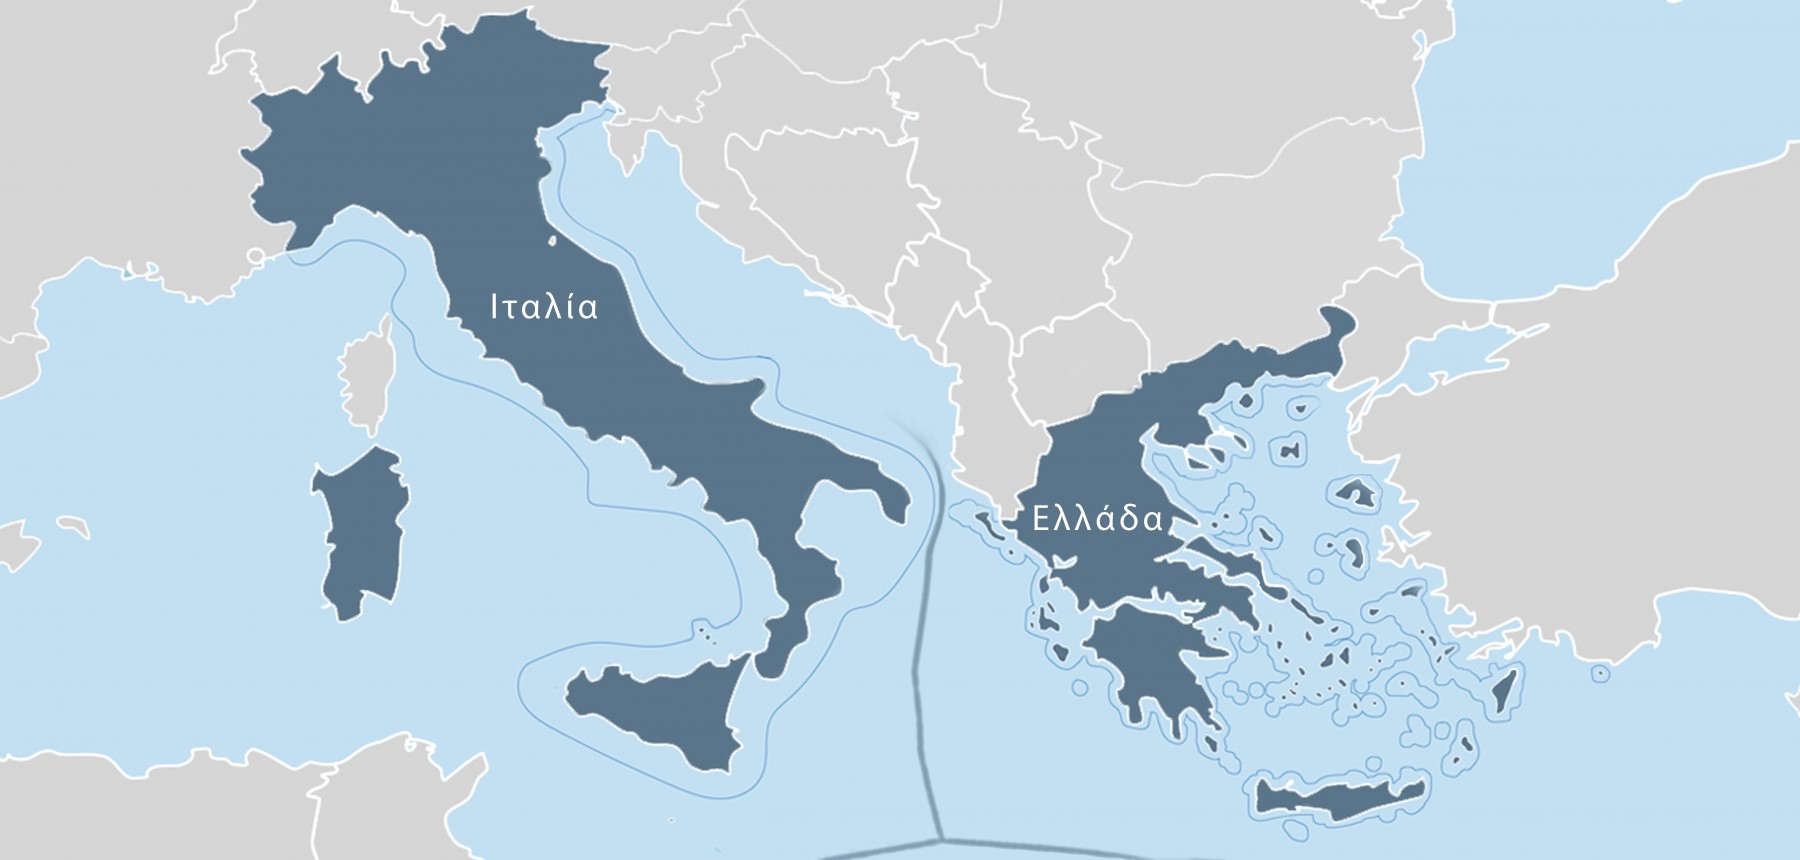 Η Ιταλική Γερουσία ενέκρινε την συμφωνία οριοθέτησης θαλασσίων ζωνών Ελλάδας - Ιταλίας